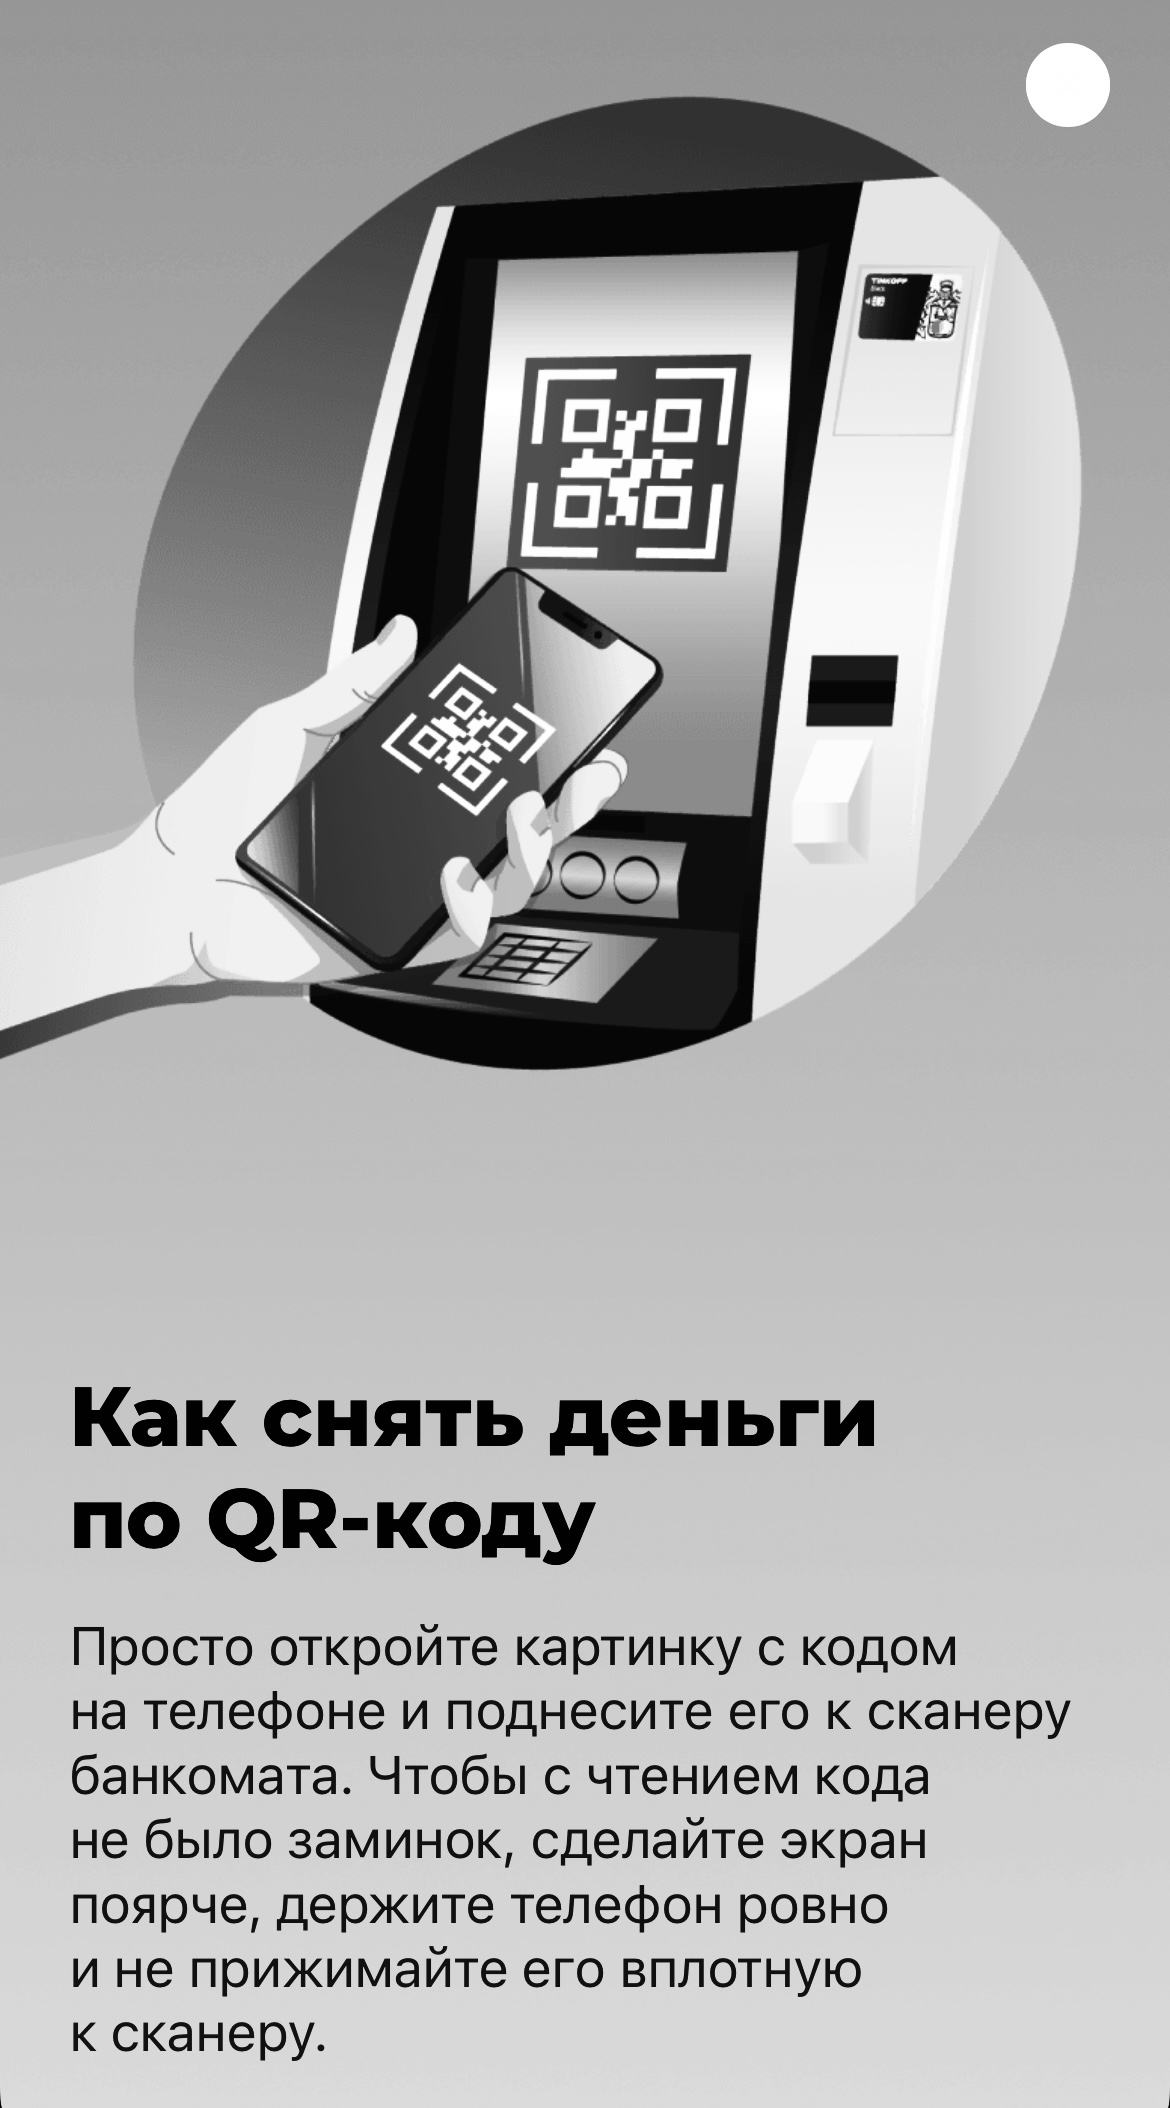 Снять наличные по qr коду. Сканер банкомата тинькофф. Банкомат тинькофф QR код. Считыватель QR кодов. Сканировать QR код.